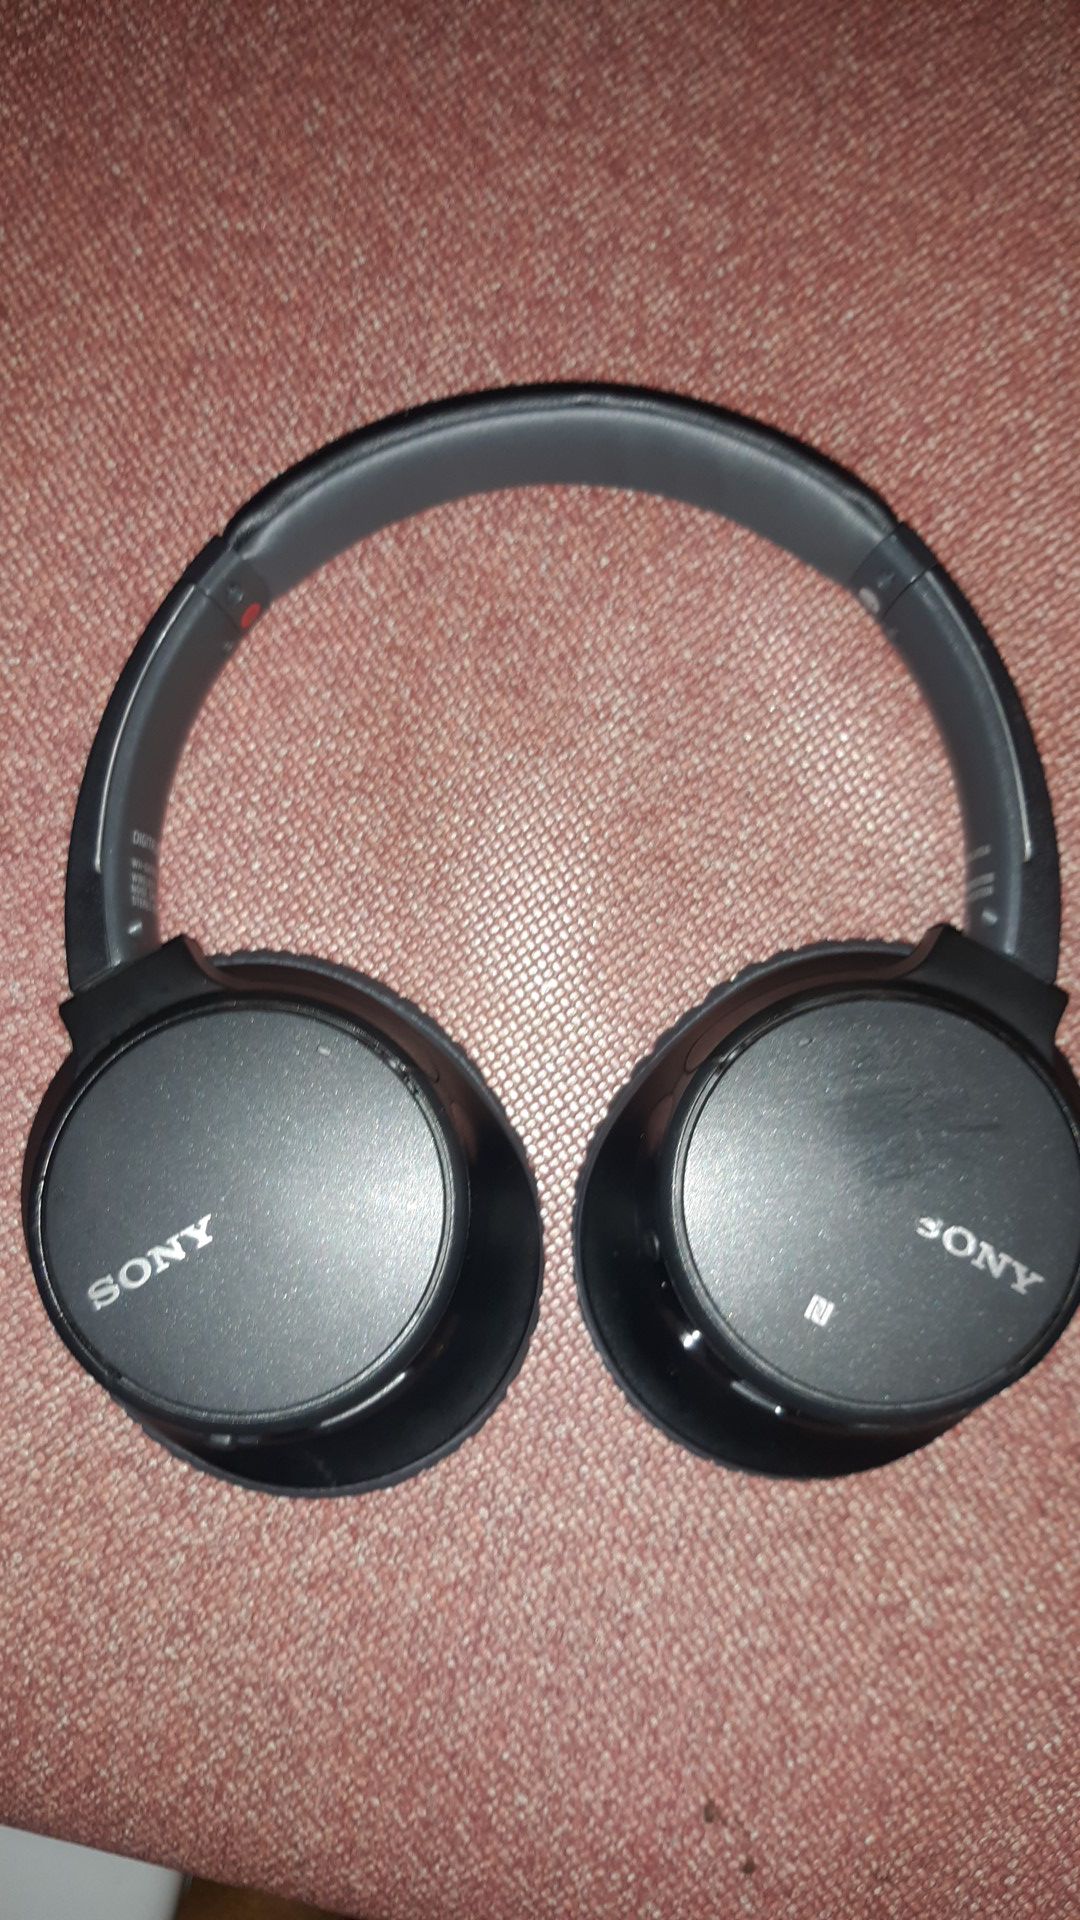 Sony bluetooth wireless headset